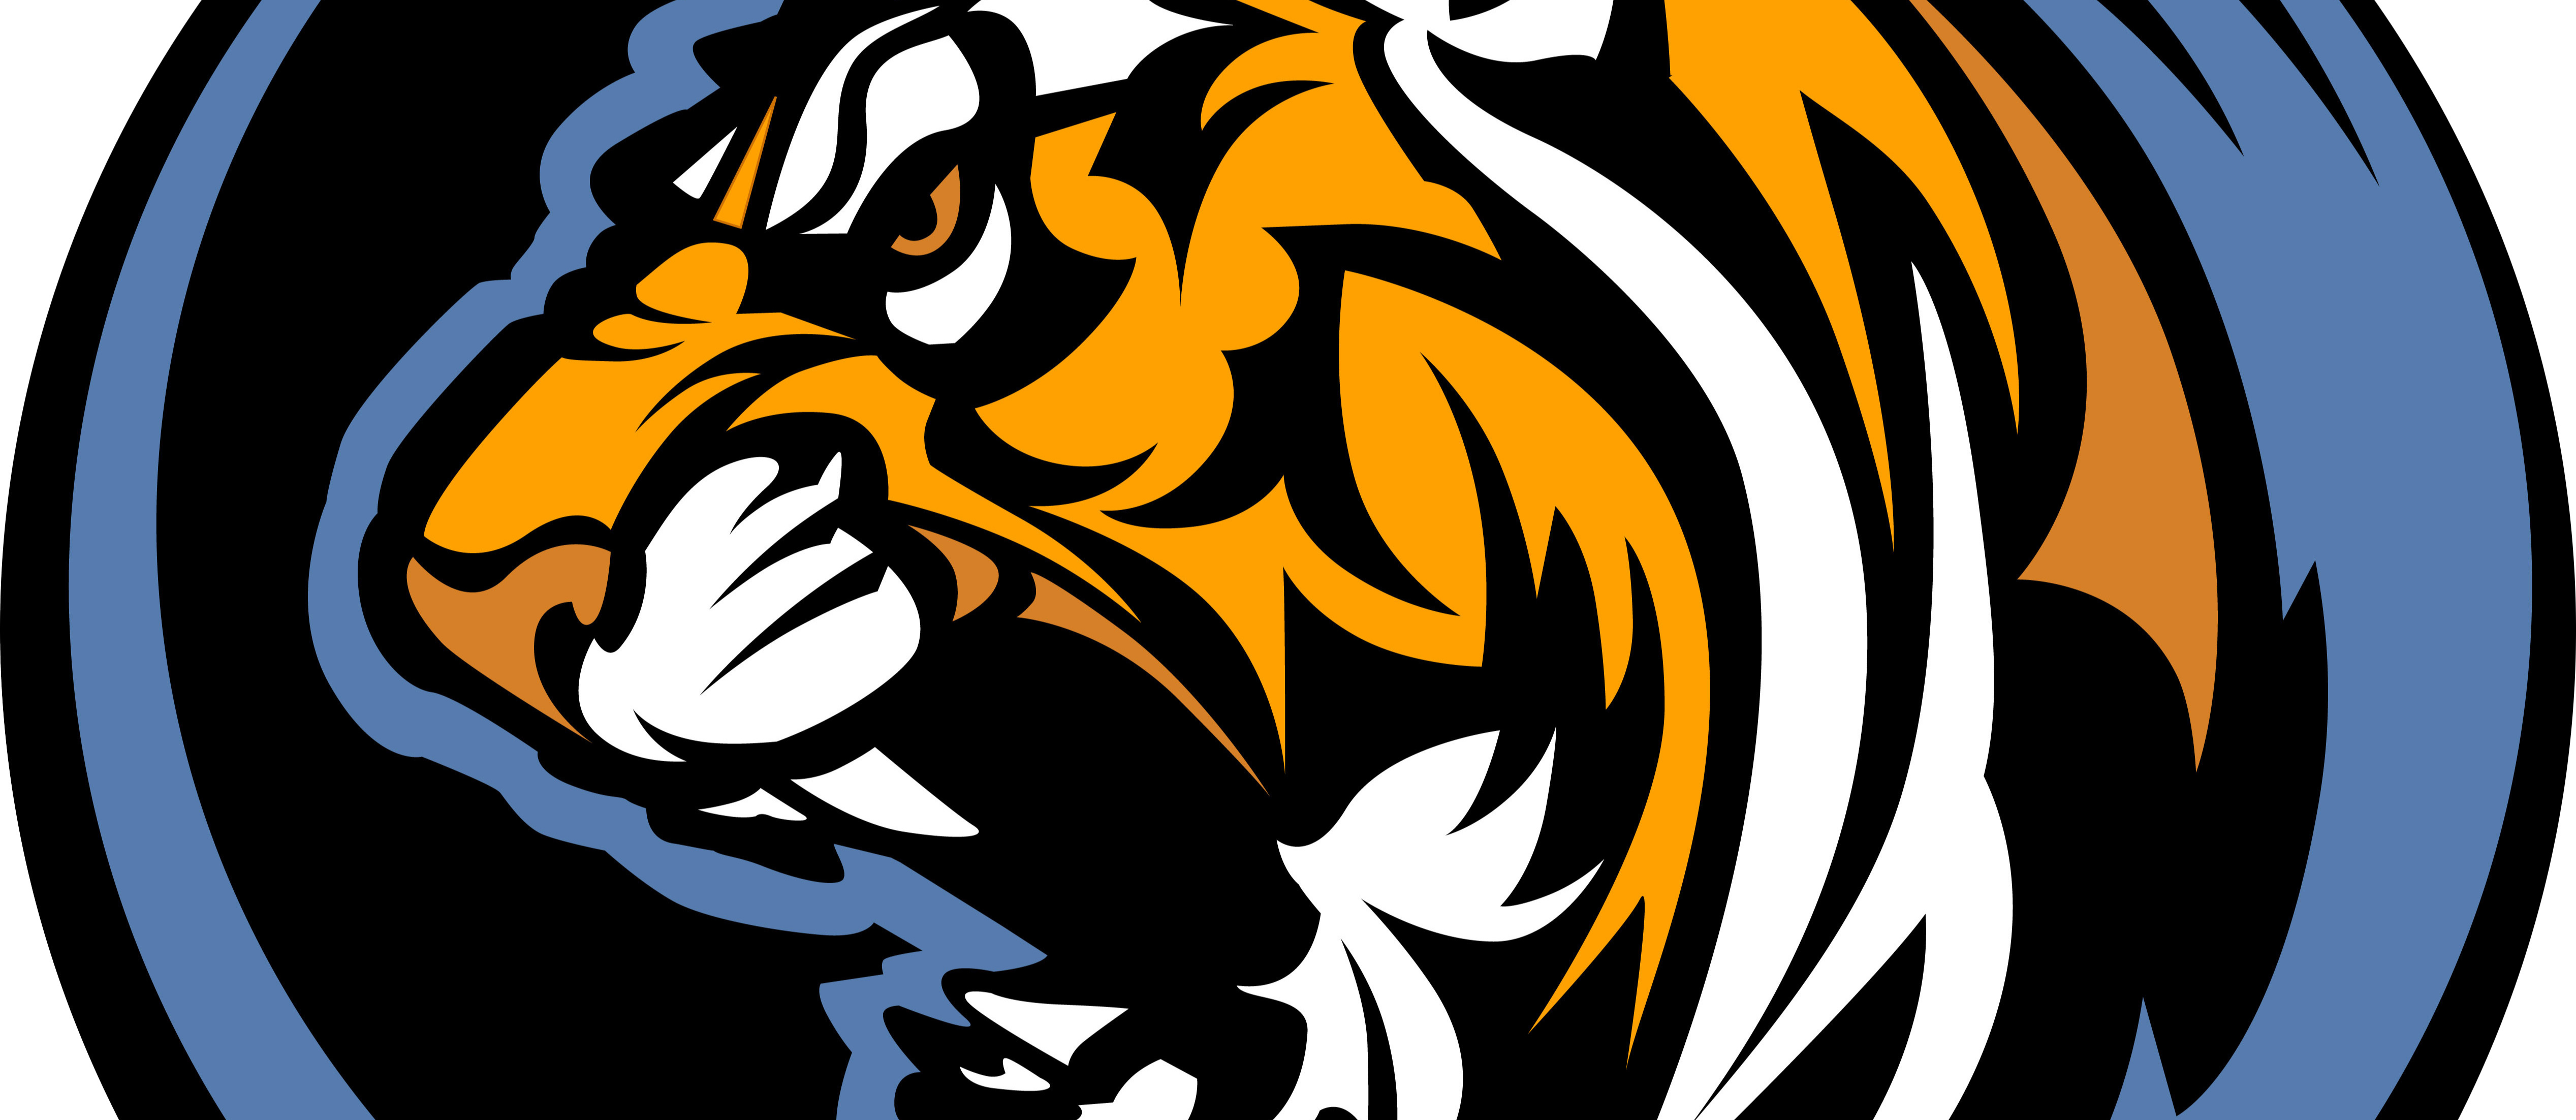 Tiger logo executive